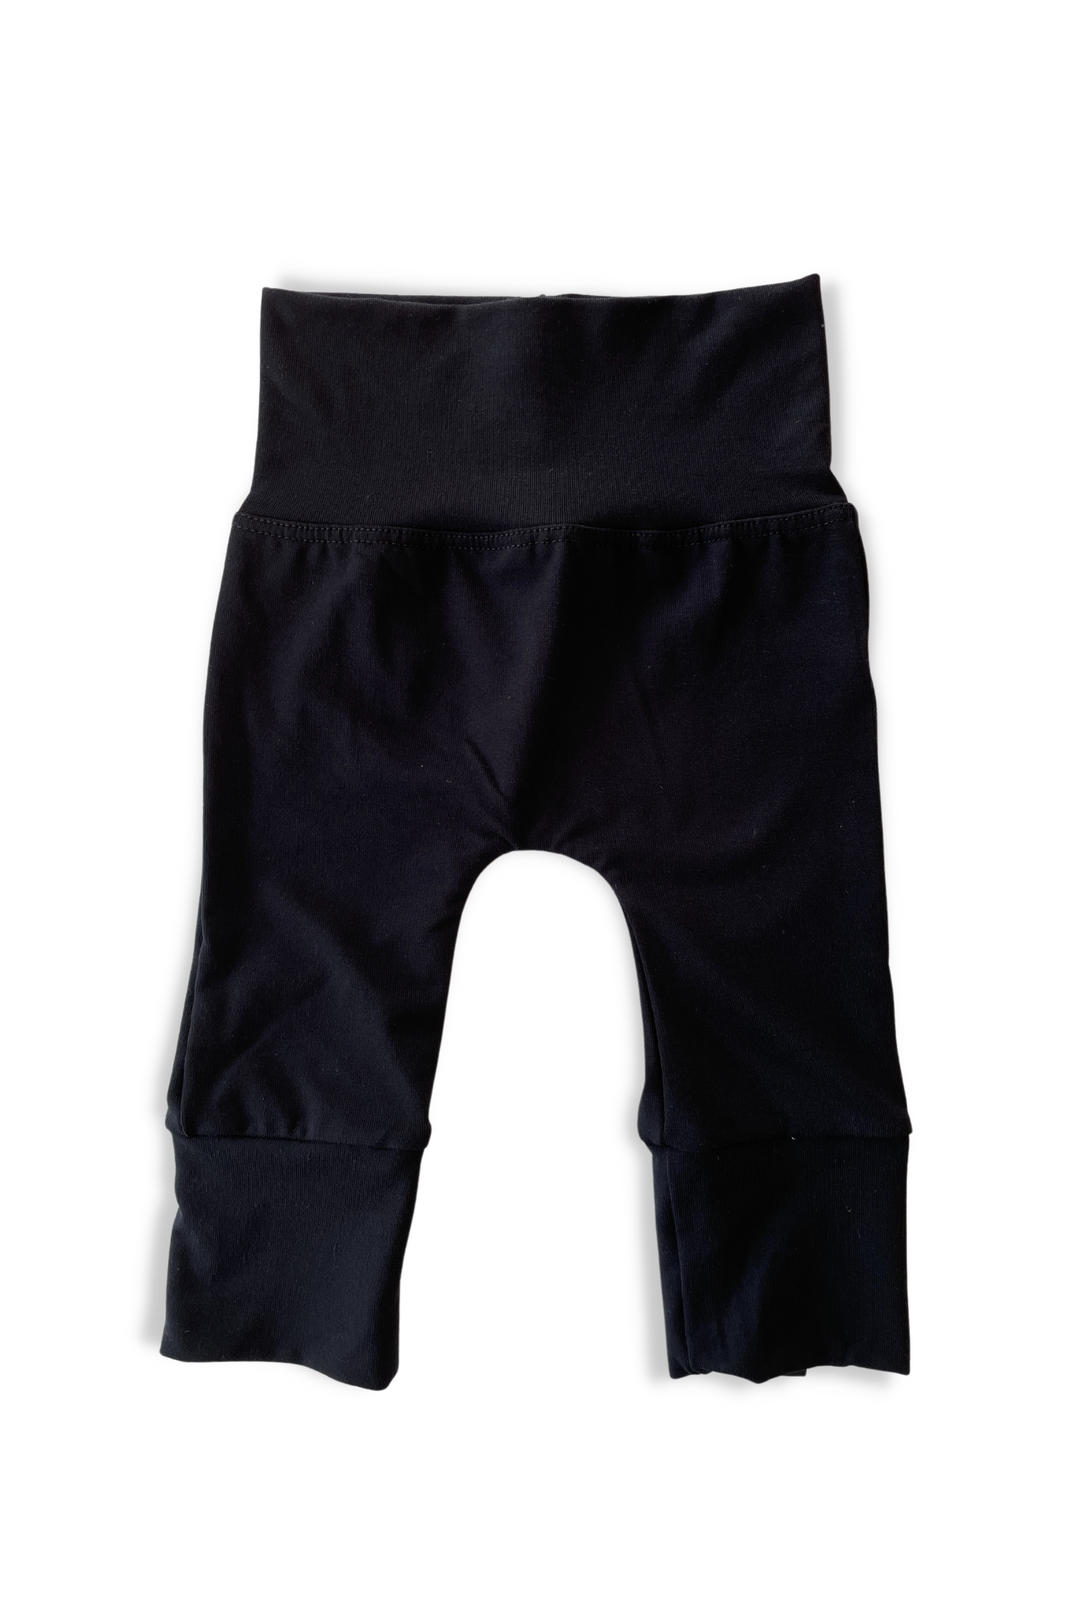 Pantalon pour bébé évolutif en bambou noir